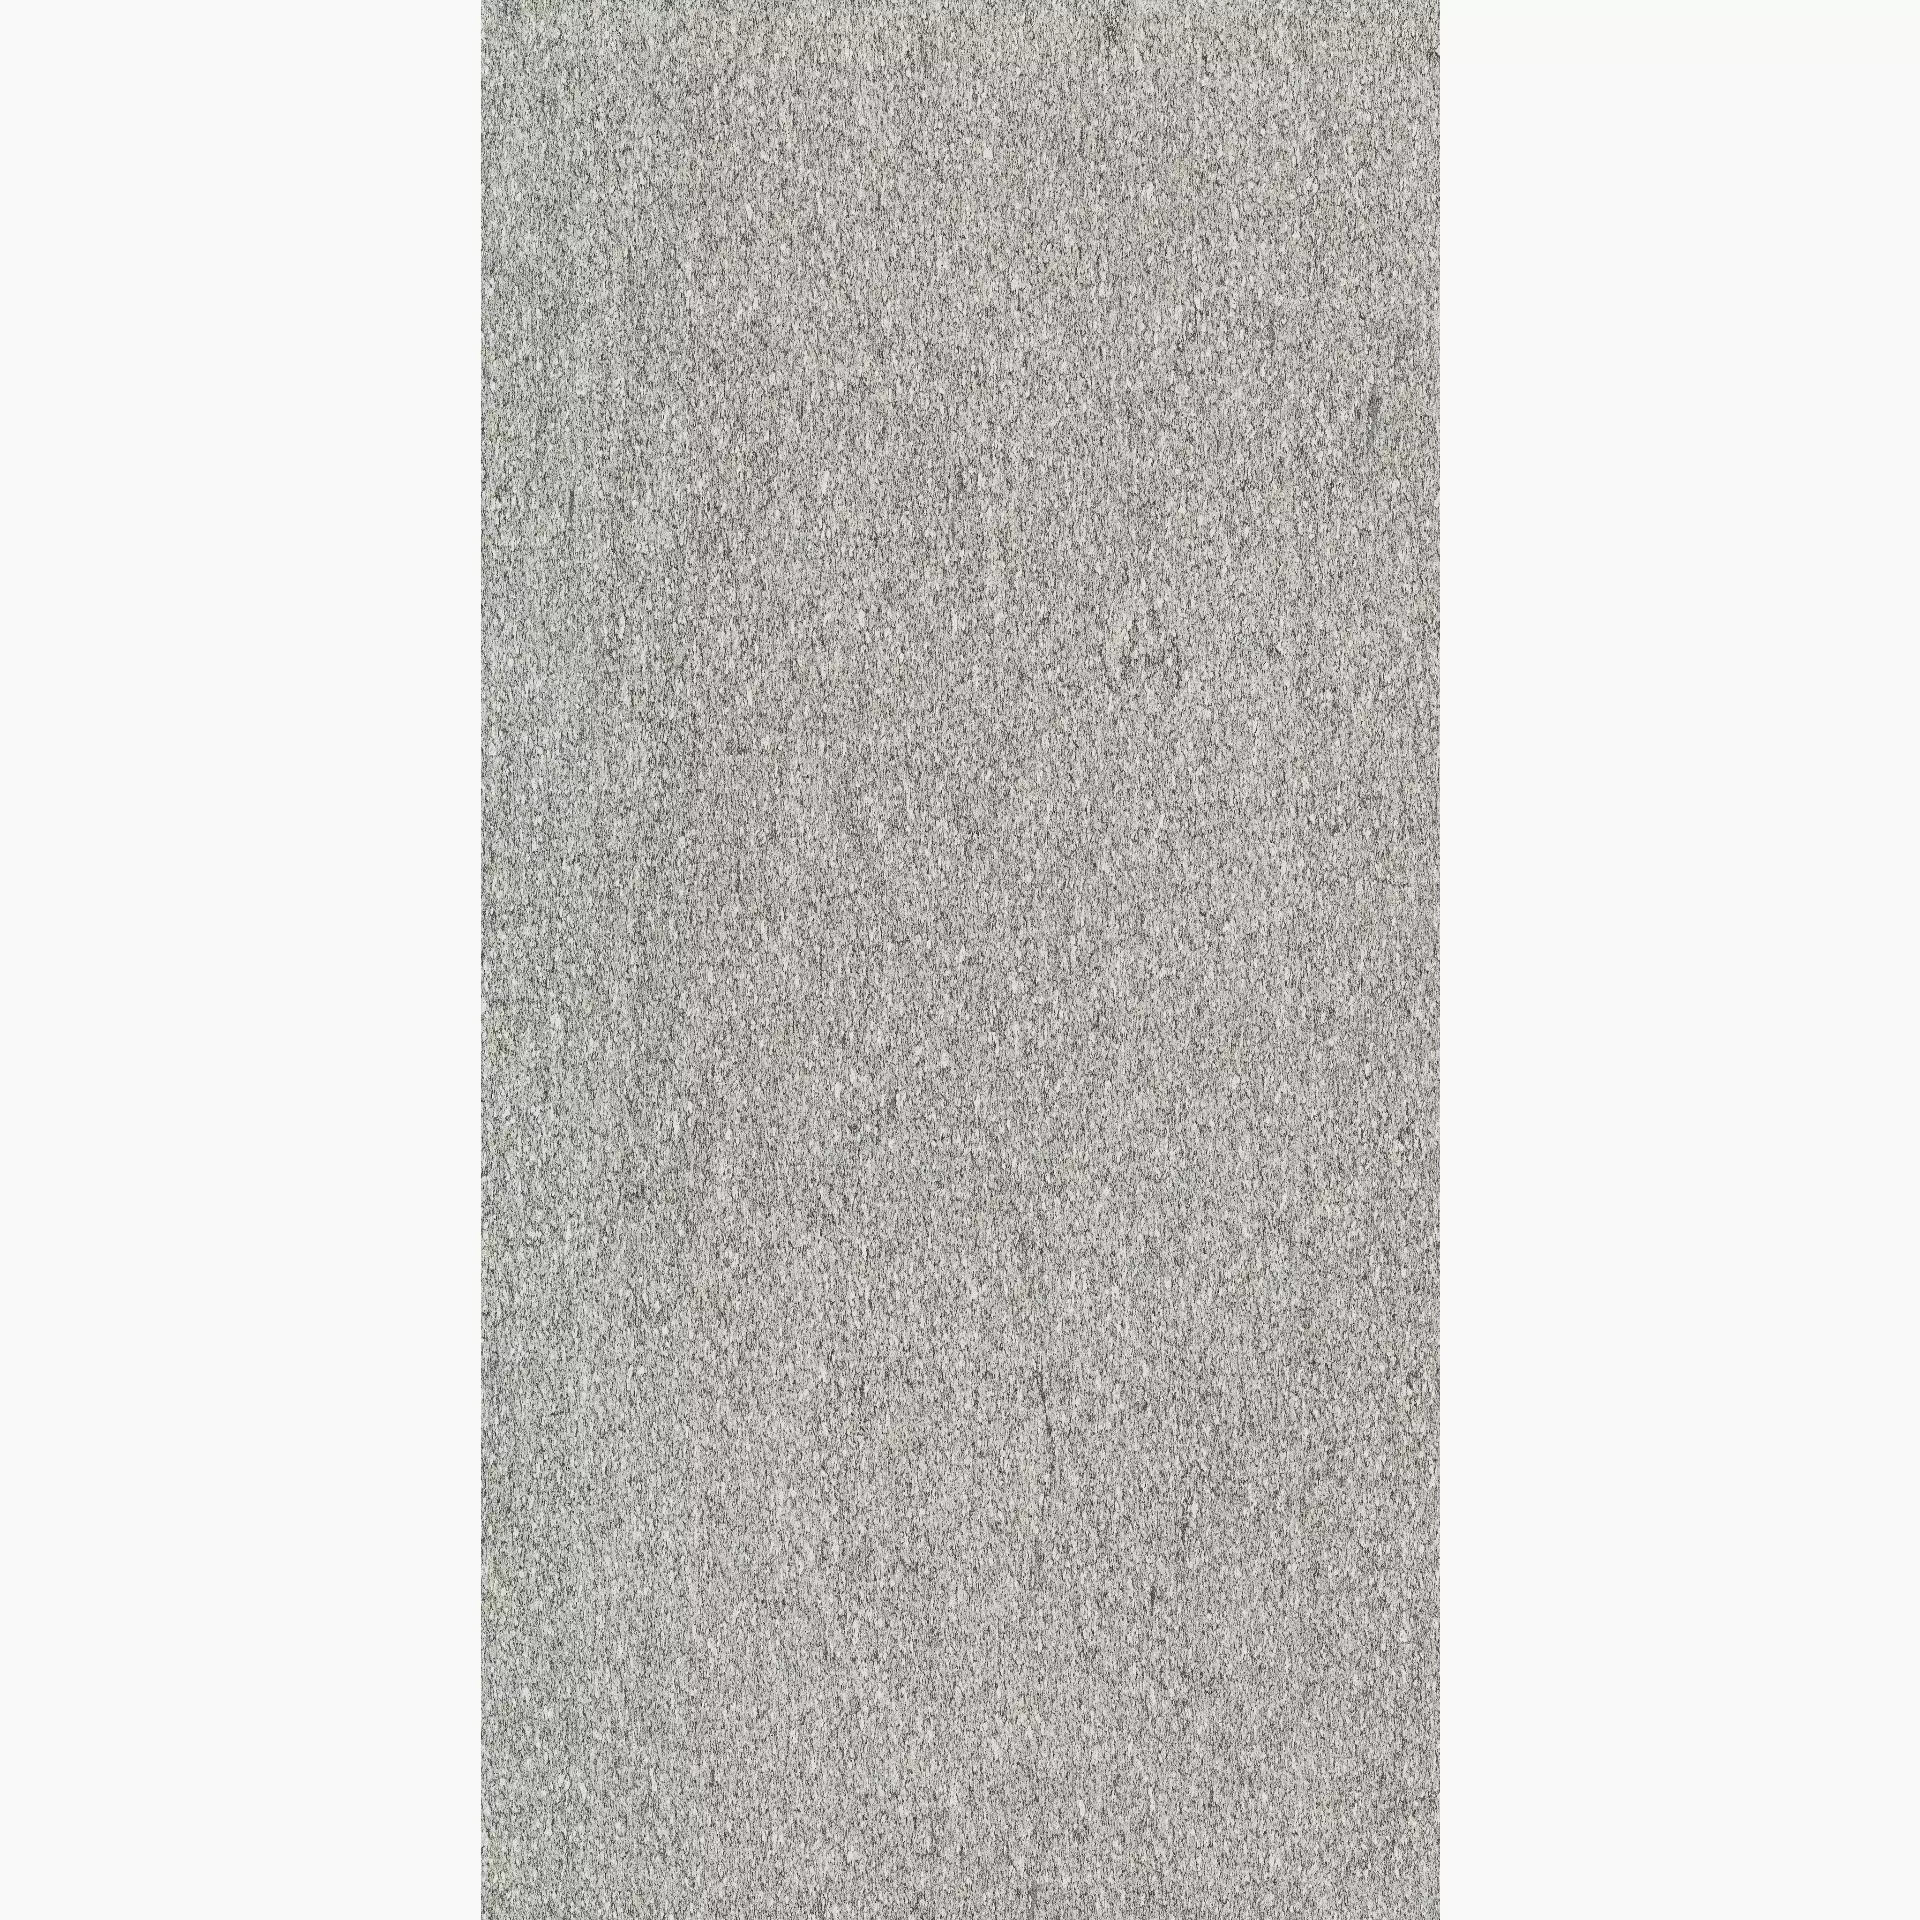 Florim Biotech Serizzo Stone Naturale – Matt Serizzo Stone 778782 matt natur 120x240cm rektifiziert 6mm